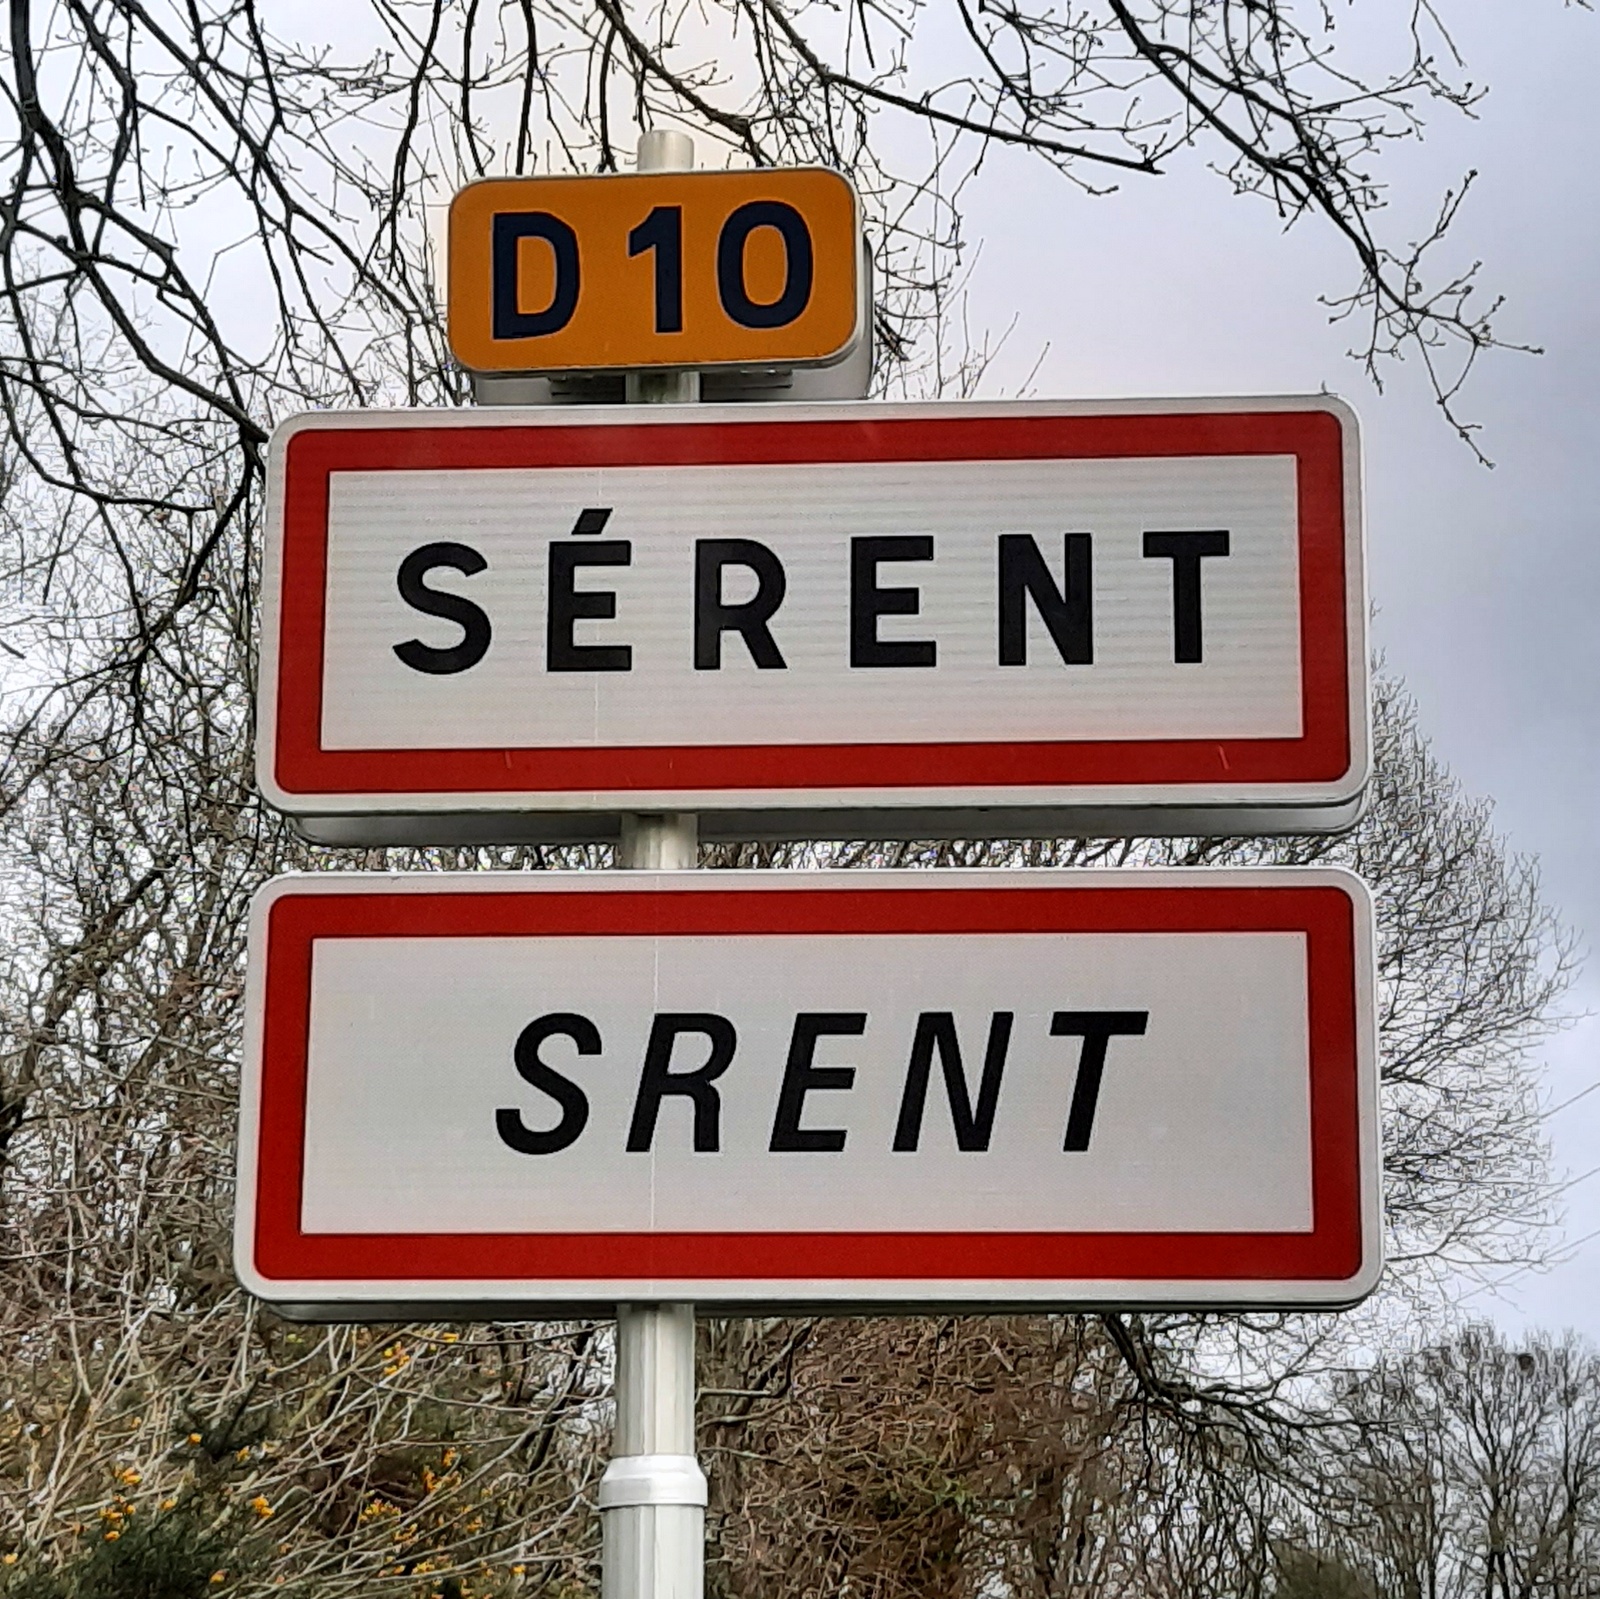 Panneau bilingue français-gallo à l'entrée de l'agglomération de Sérent, dans le Morbihan